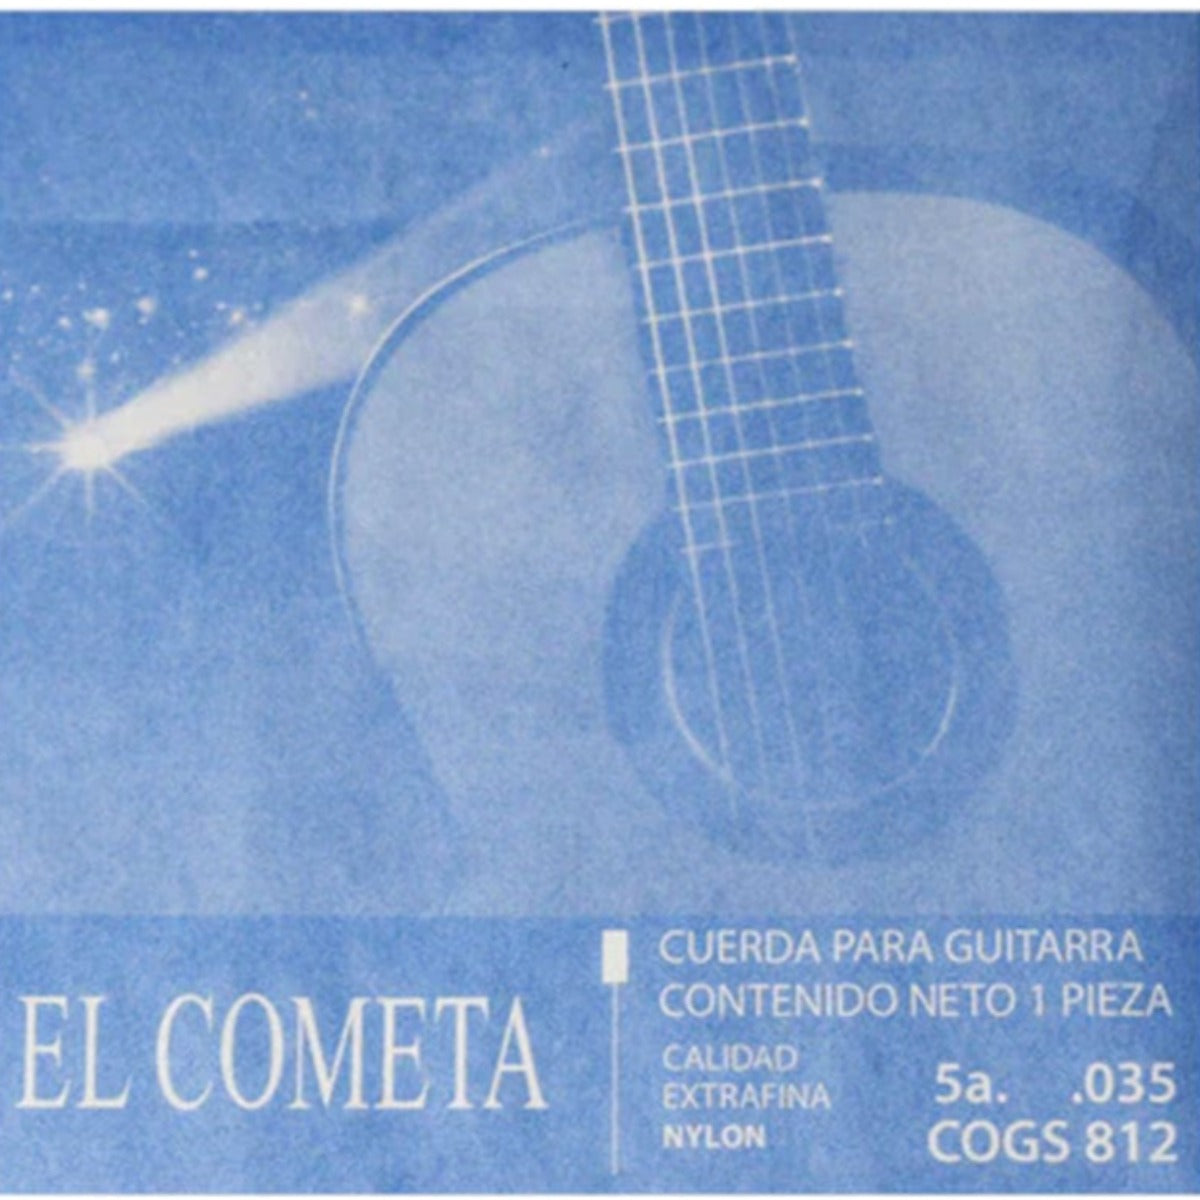 CUERDA P/GUITARRA EL COMETA 5A NYLON C/BORLA 035